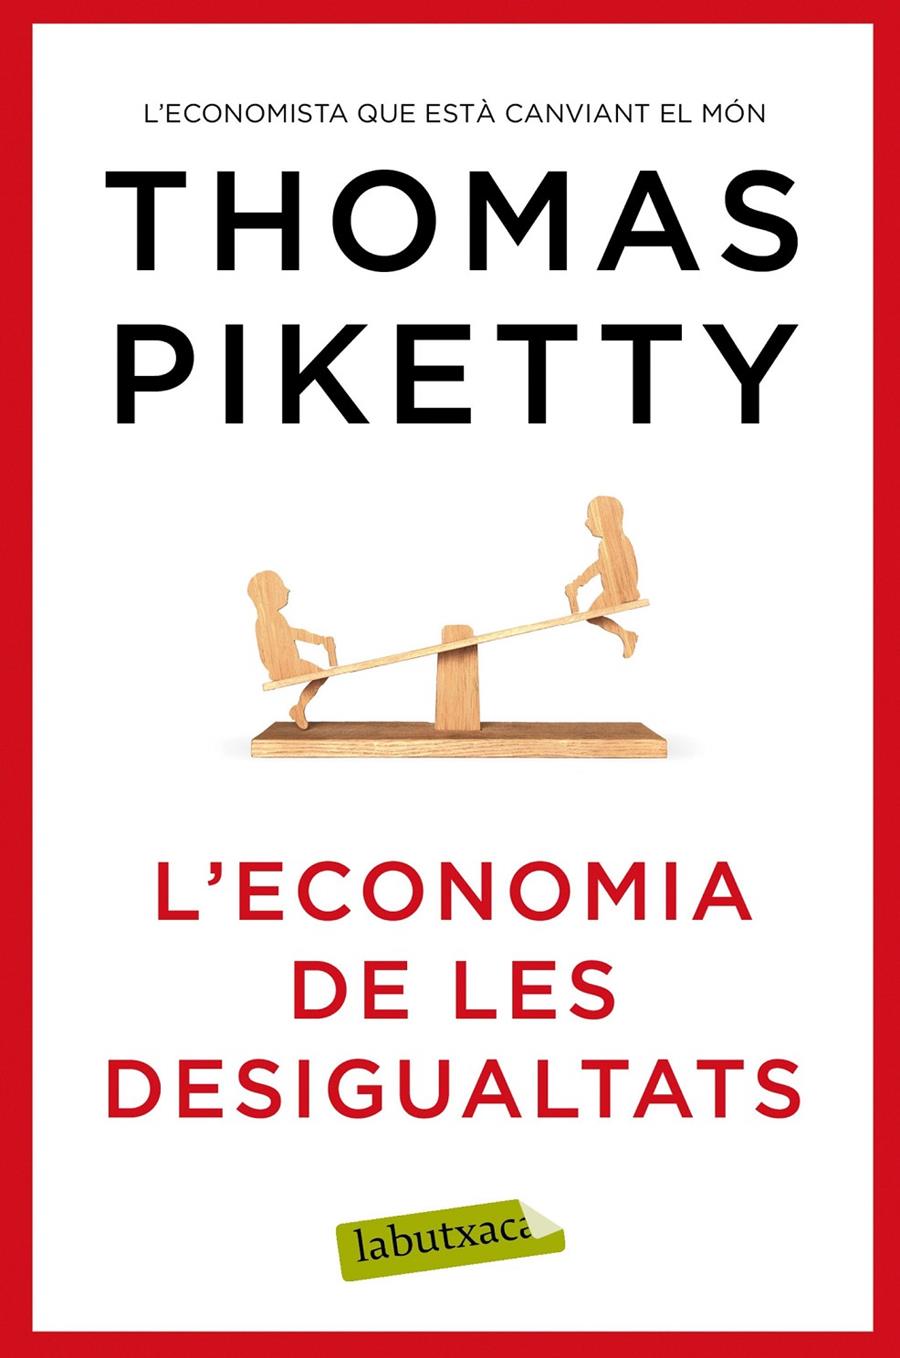 L'economia de les desigualtats | Piketty, Thomas | Cooperativa autogestionària